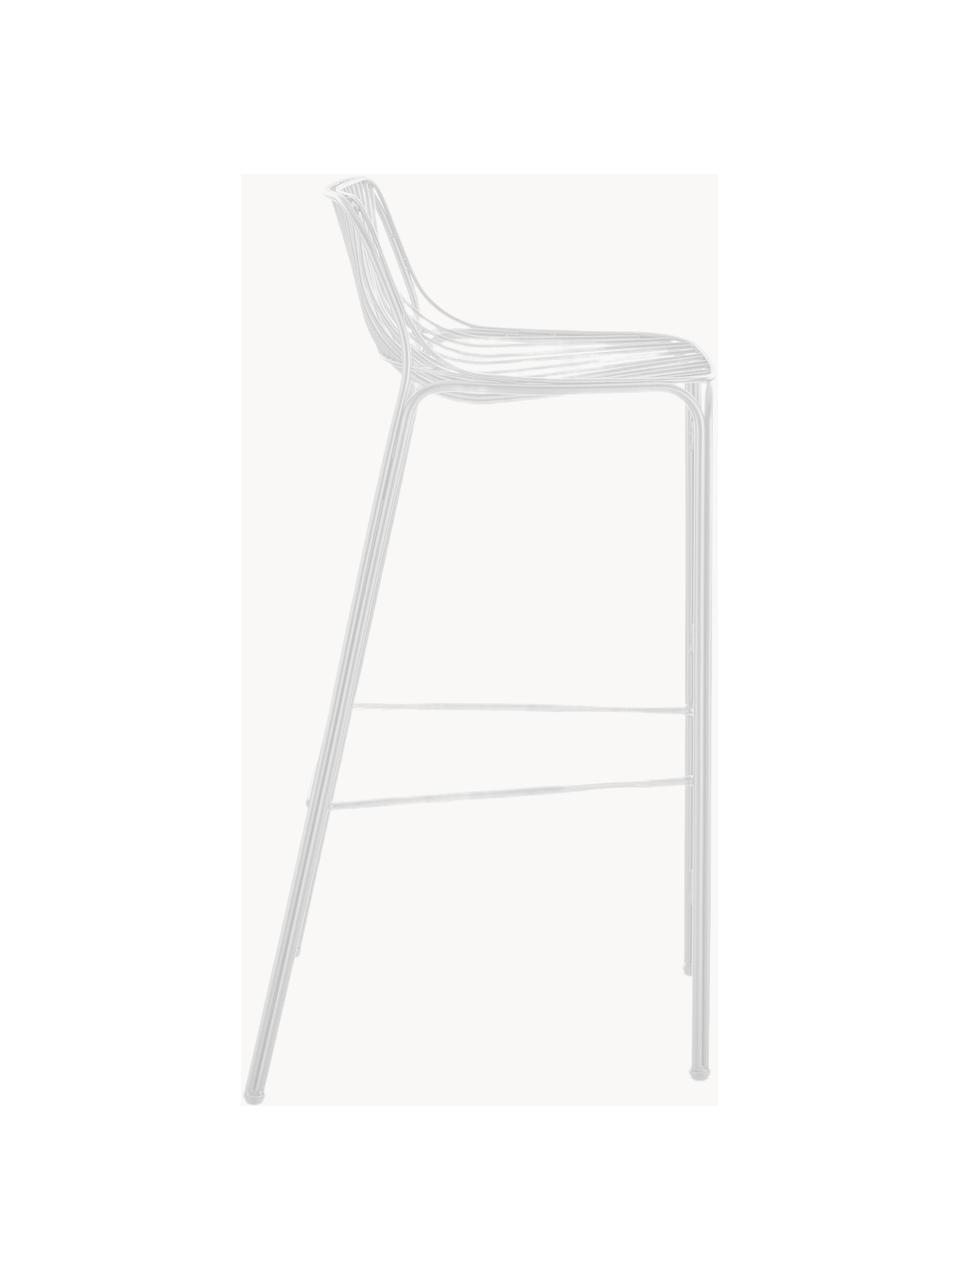 Ogrodowe krzesło barowe Hiray, Stal ocynkowana, lakierowana, Biały, S 57 x W 96 cm